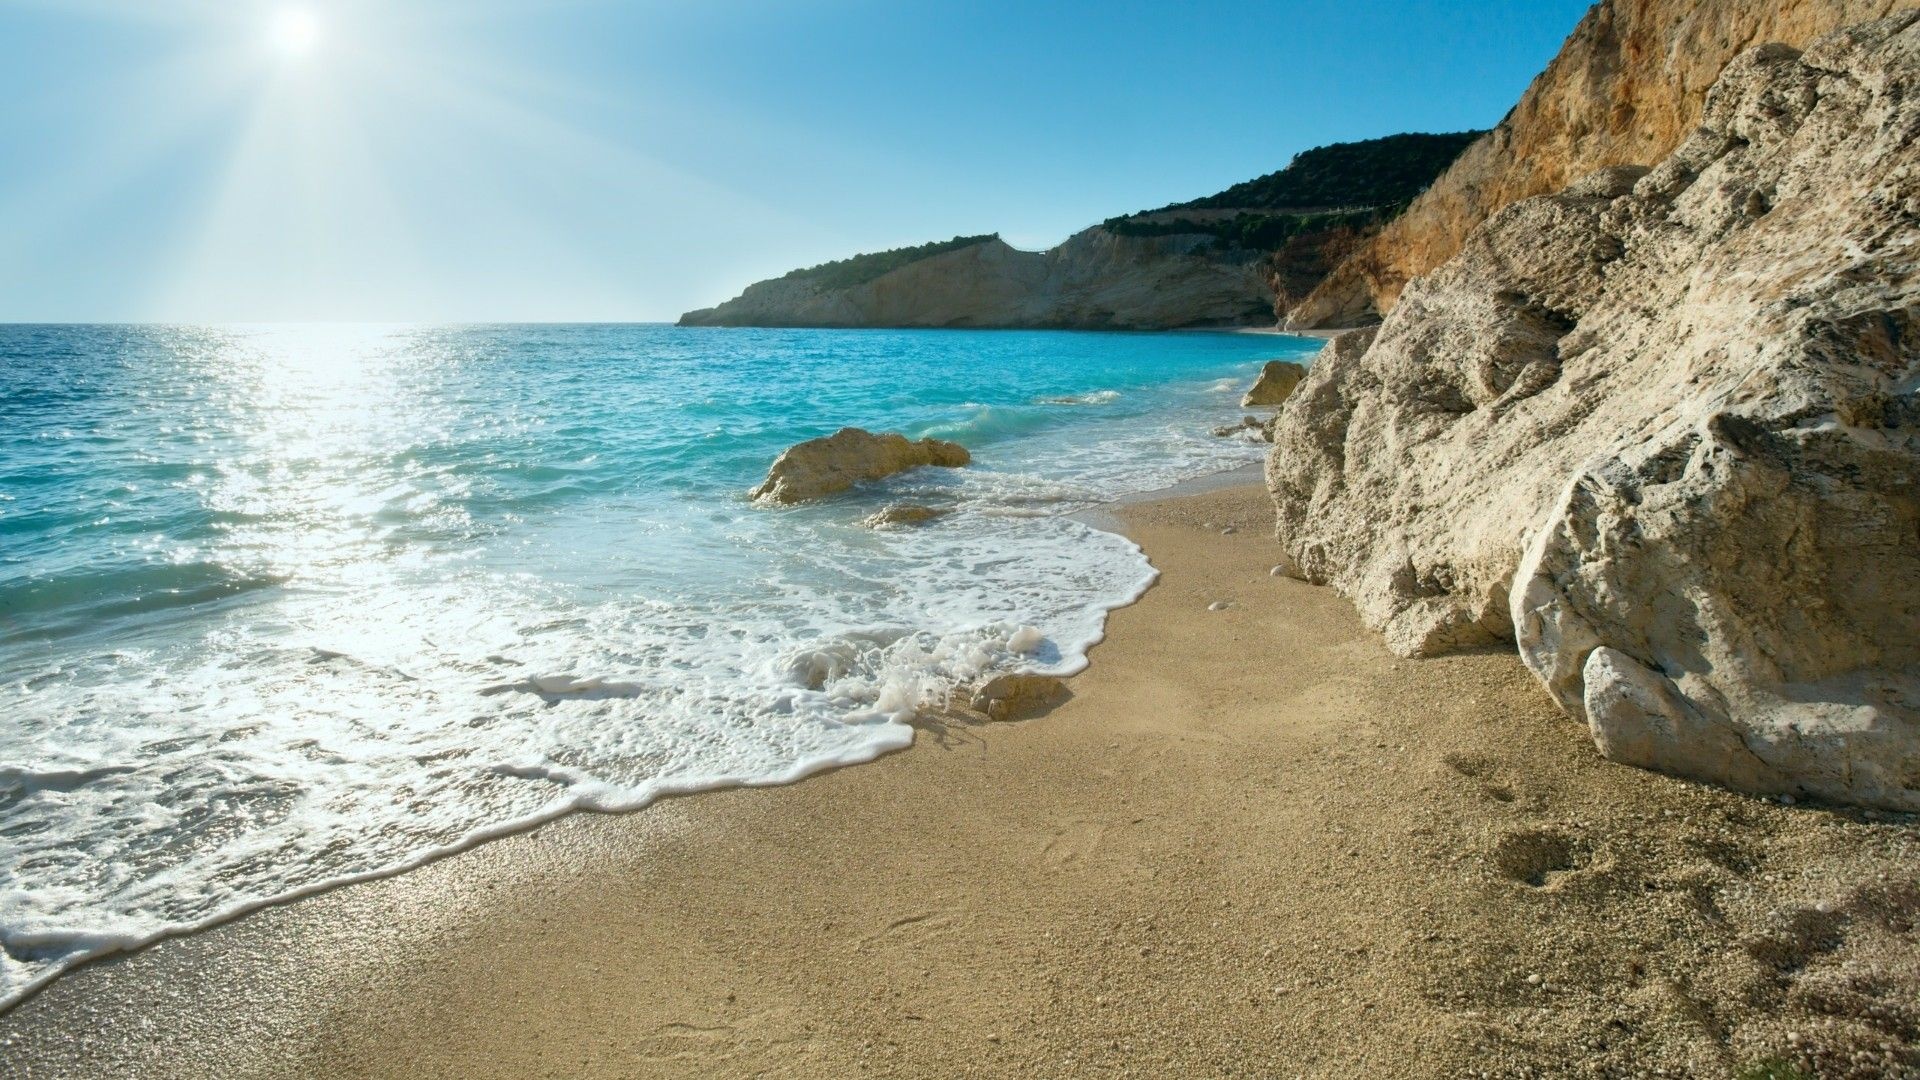 Greek ocean beauty, Gorgeous Greek coast, Seaside enchantment, Greece's coastal allure, 1920x1080 Full HD Desktop